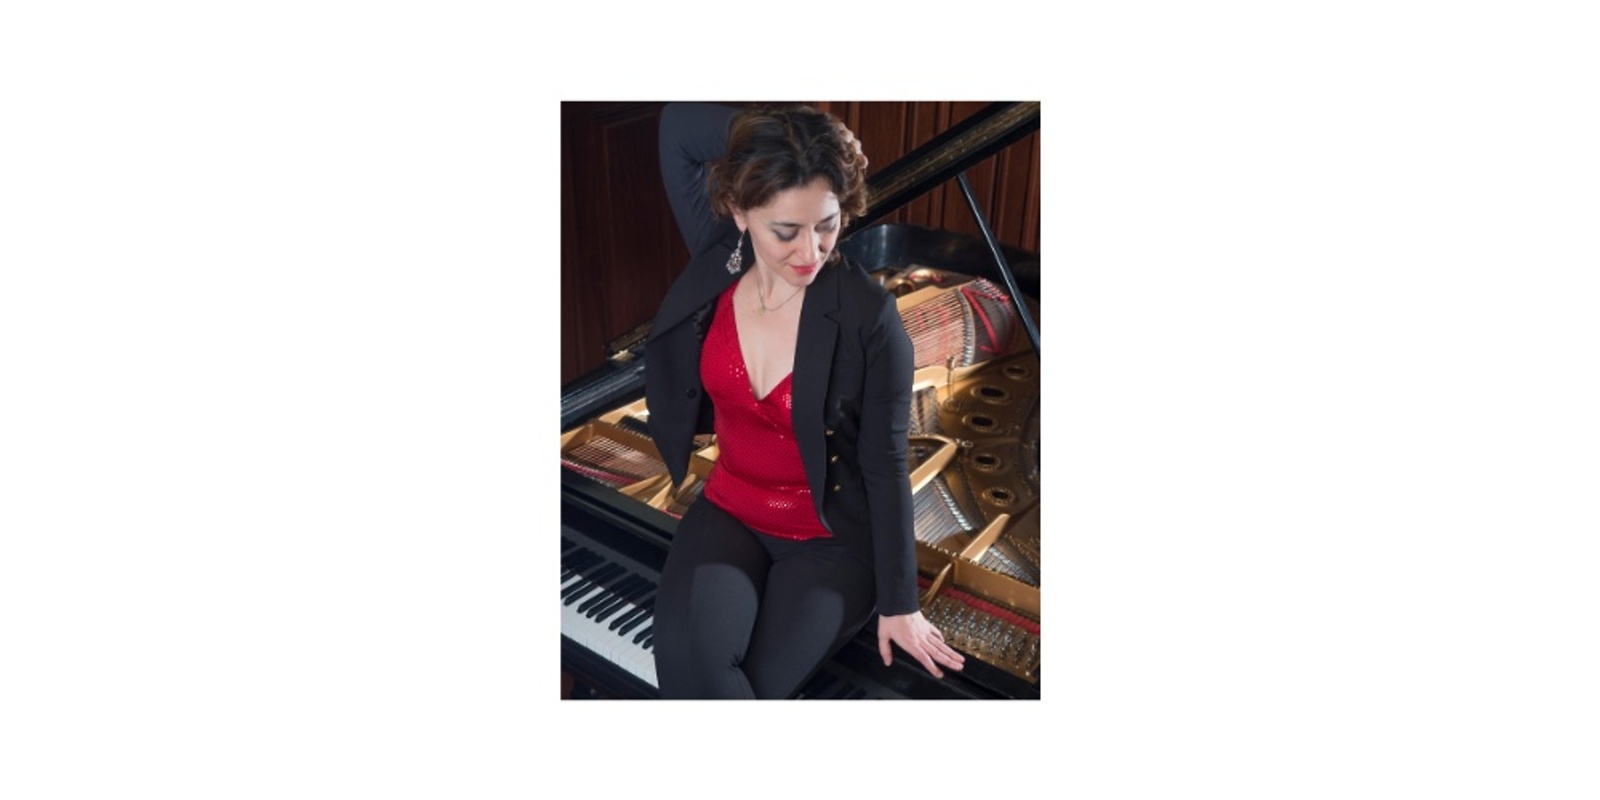  Kariné Poghosyan CD Release Concert